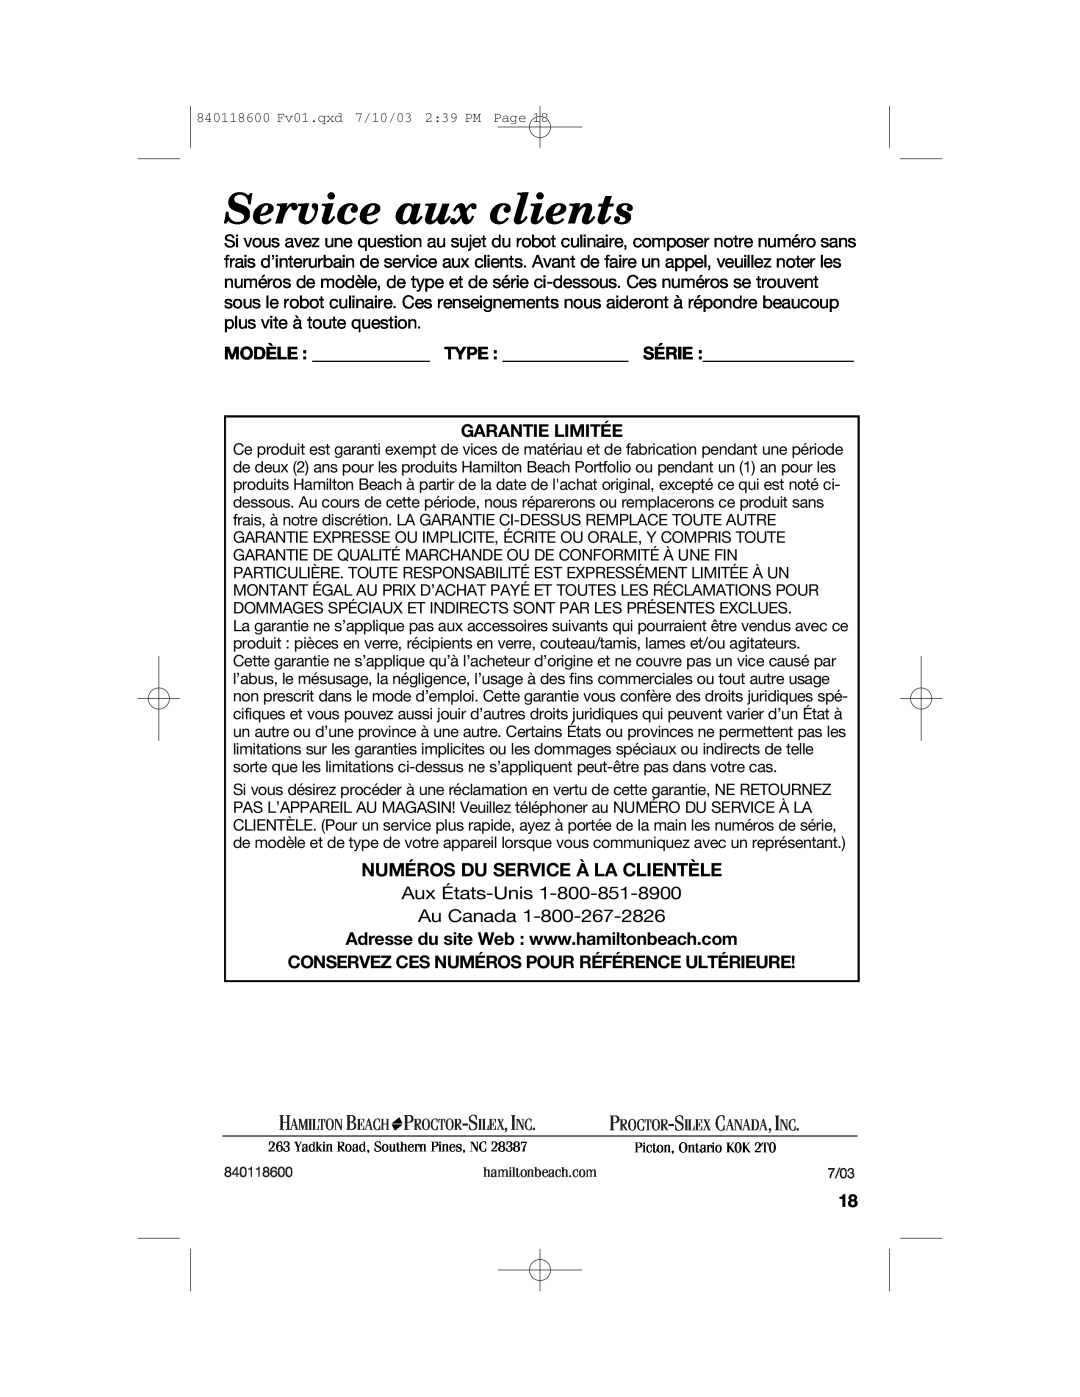 Hamilton Beach 70550RC manual Service aux clients, Numéros Du Service À La Clientèle, Garantie Limitée, Hamilton Beach 